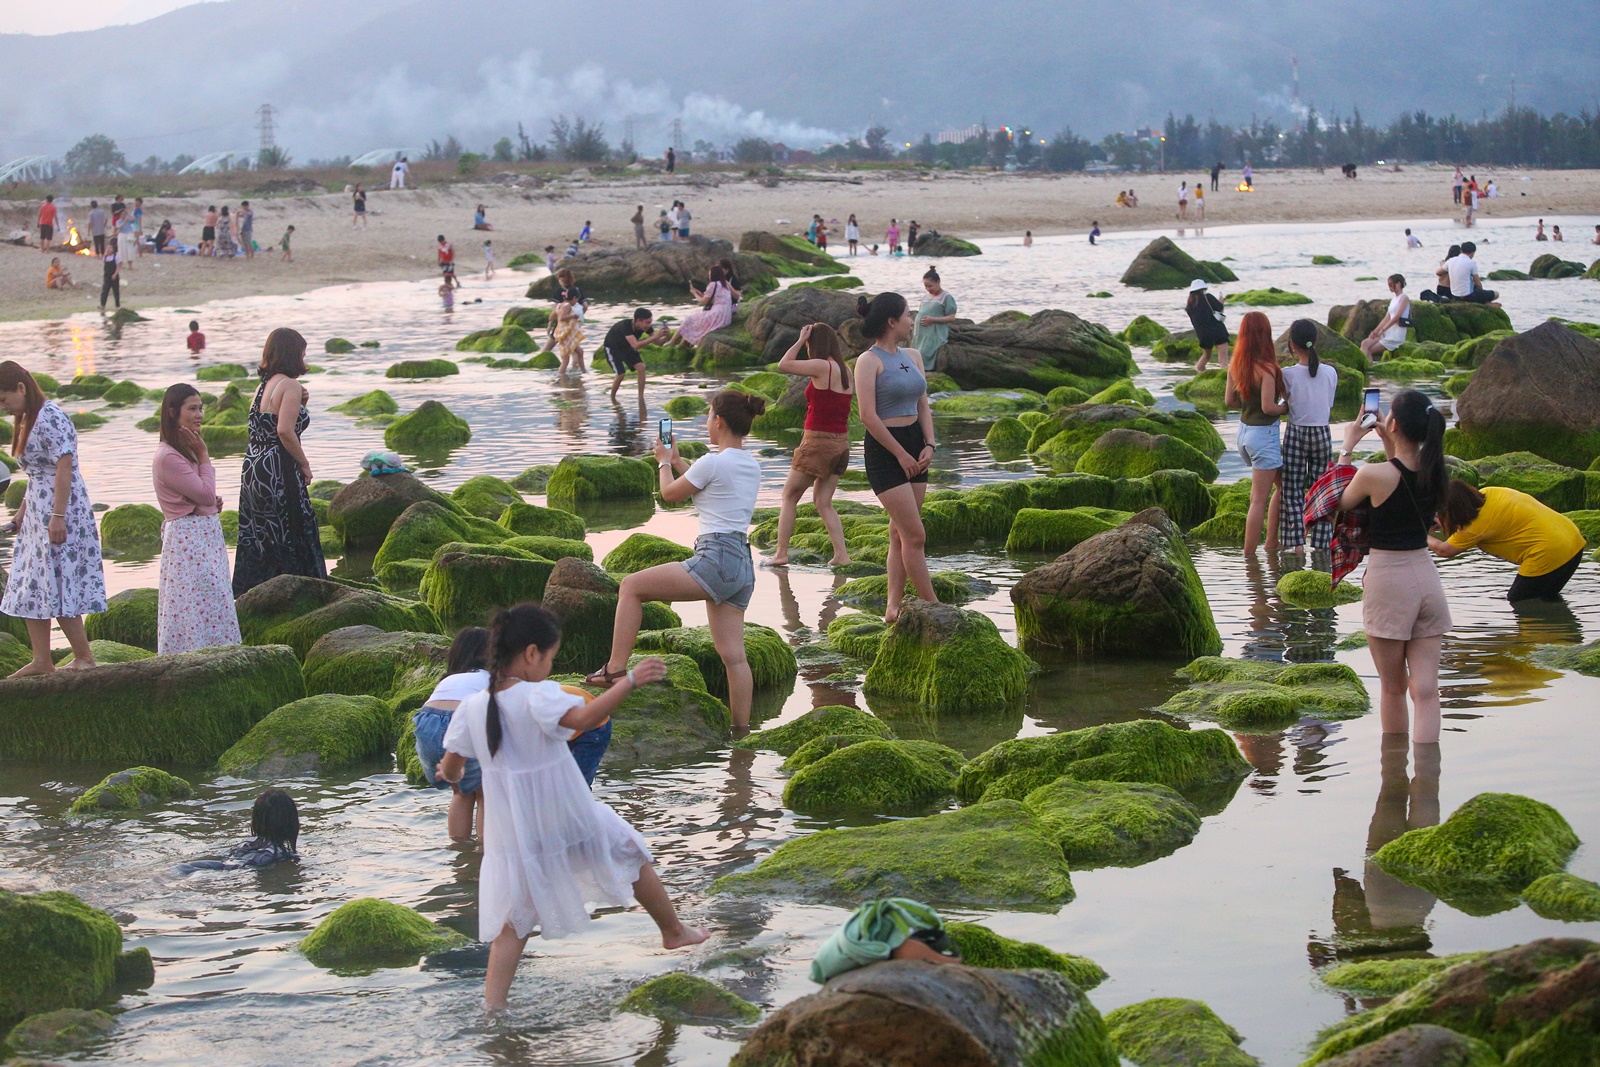 Ảnh: Chen chân chụp ảnh bãi rêu tuyệt đẹp ven biển Đà Nẵng - Ảnh 11.